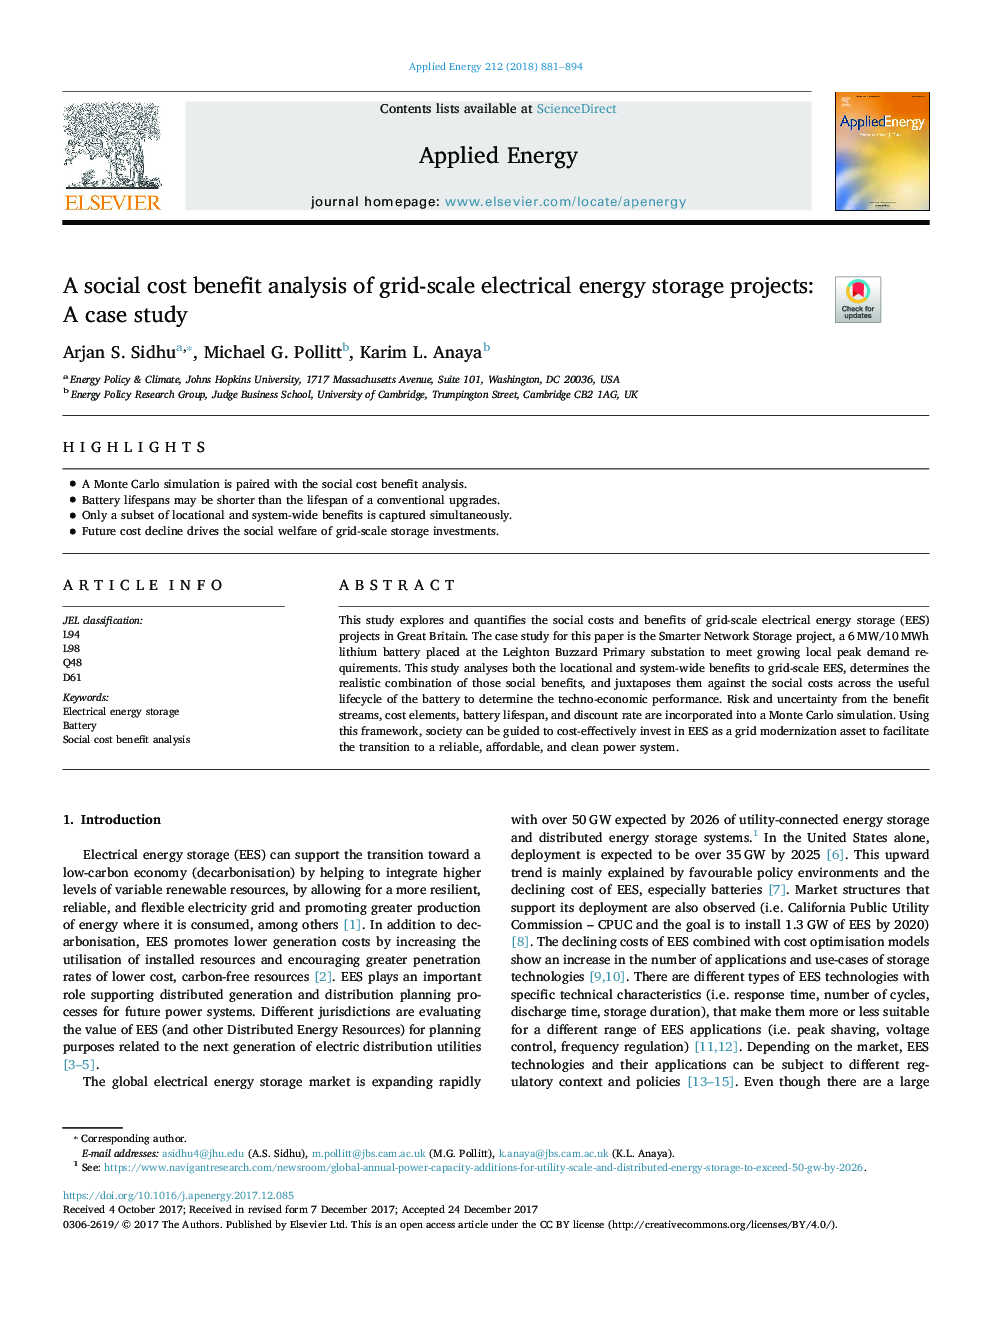 تجزیه و تحلیل سود هزینه اجتماعی پروژه های ذخیره انرژی الکتریکی مقیاس شبکه: مطالعه موردی 